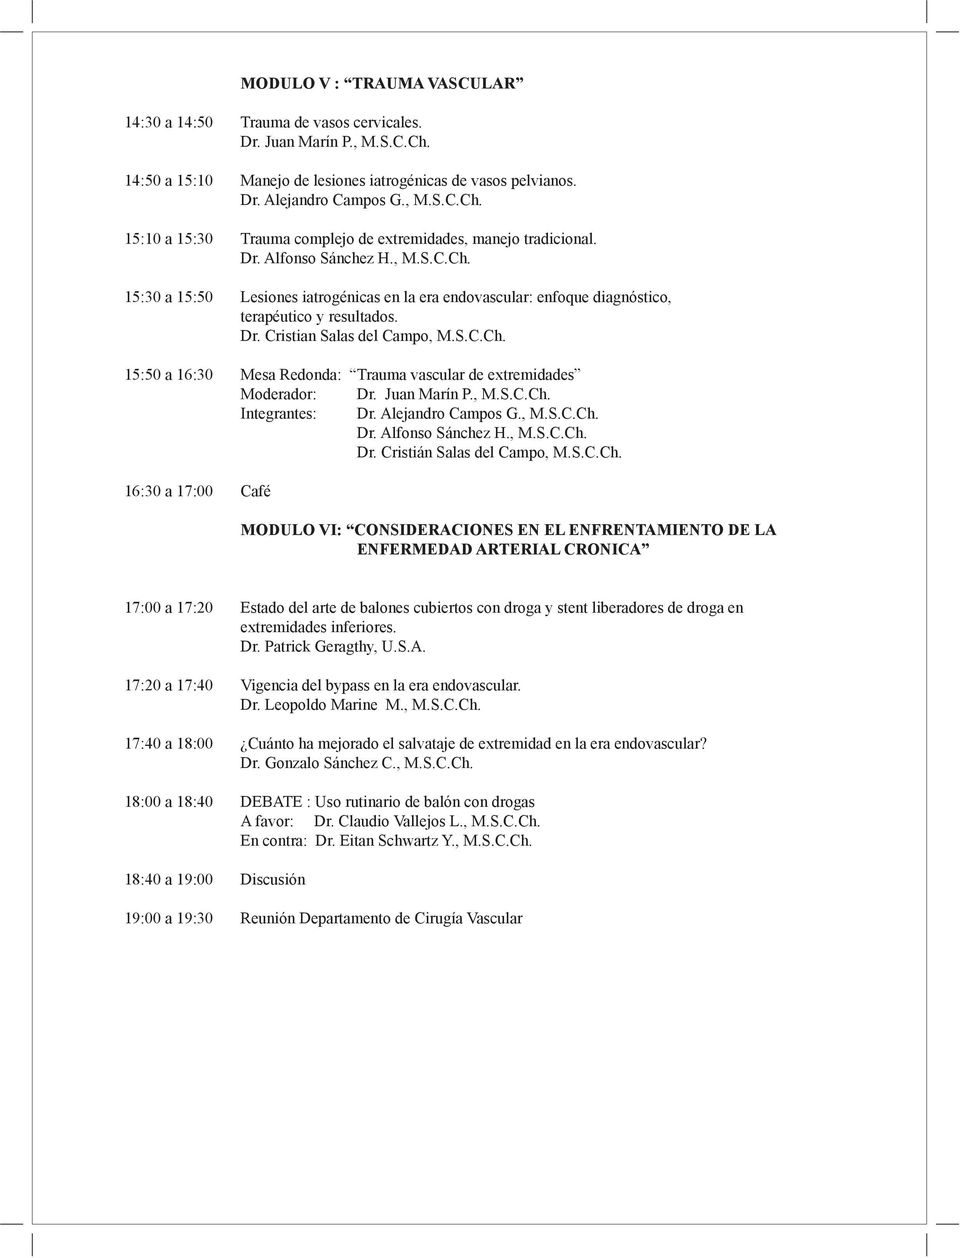 15:50 a 16:30 Mesa Redonda: Trauma vascular de extremidades Moderador: Dr. Juan Marín P., M.S.C.Ch.